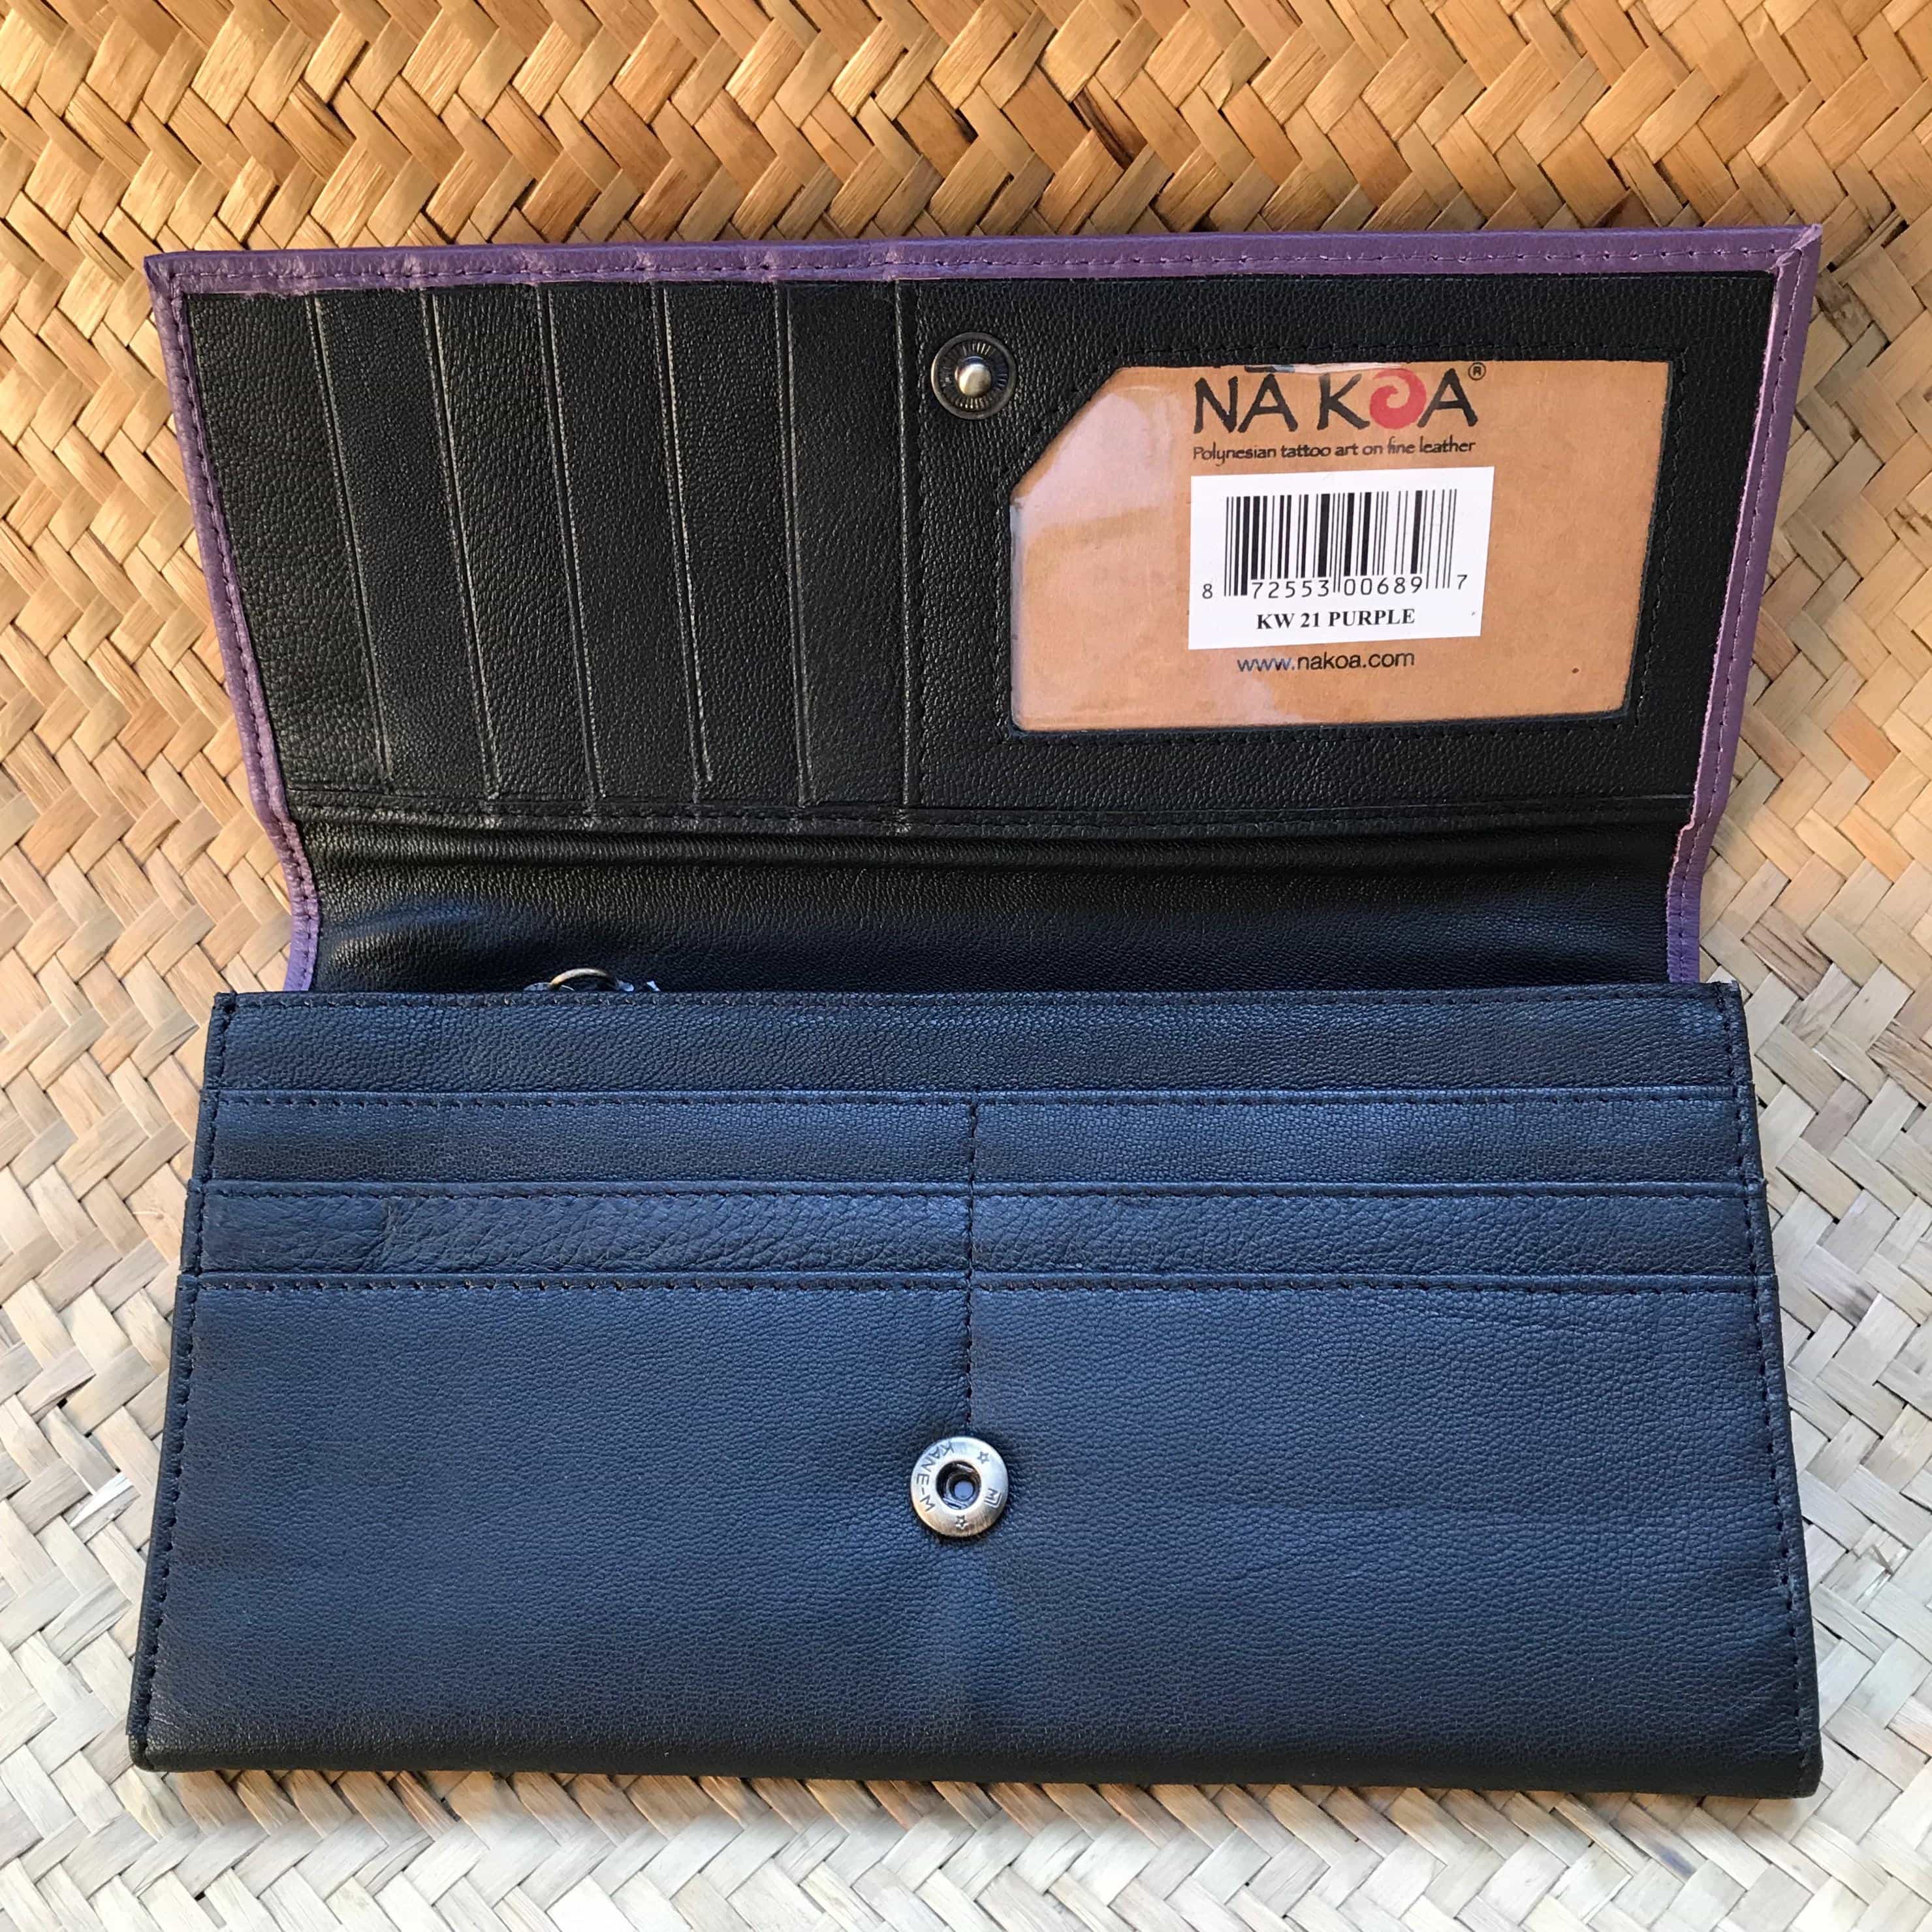 Open view of a purple clutch wallet